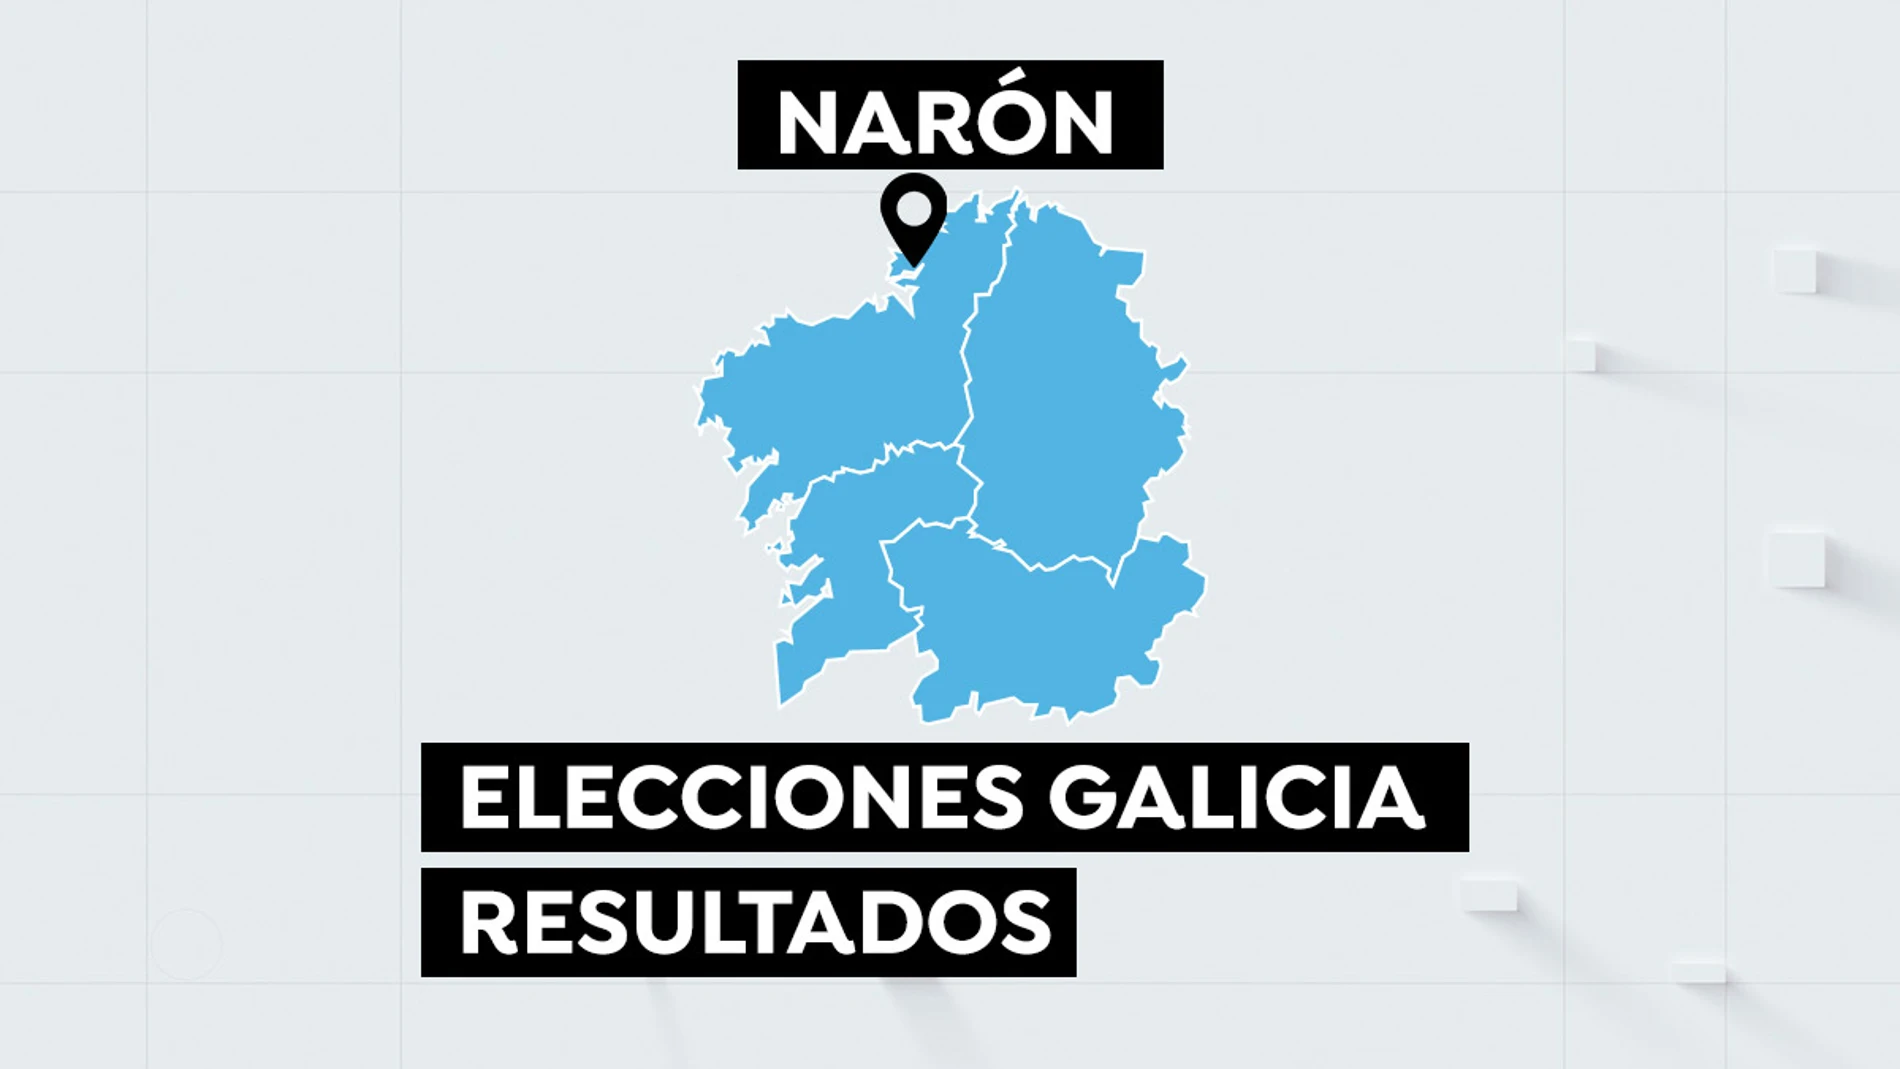 Resultado de las elecciones de Galicia en Narón